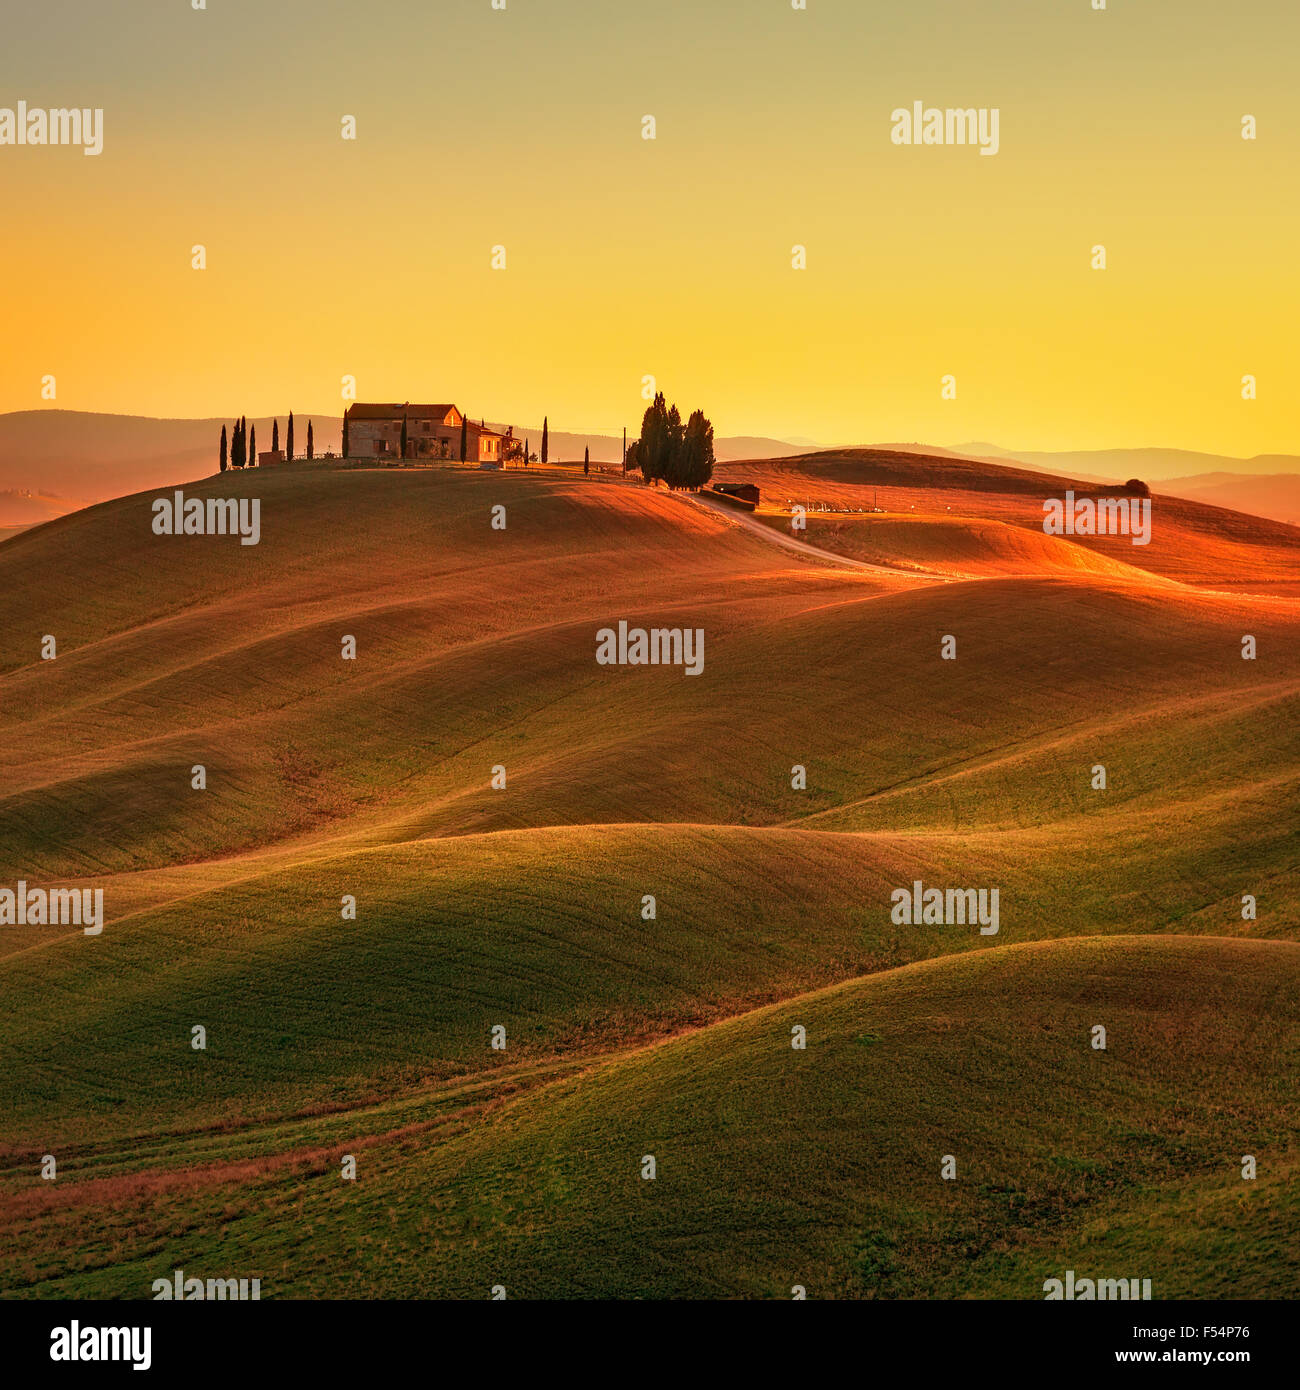 Toscana, paesaggio rurale nelle Crete Senesi a terra. Dolci colline, campagna agriturismo, cipressi secolari, campo verde sul caldo tramonto. Foto Stock